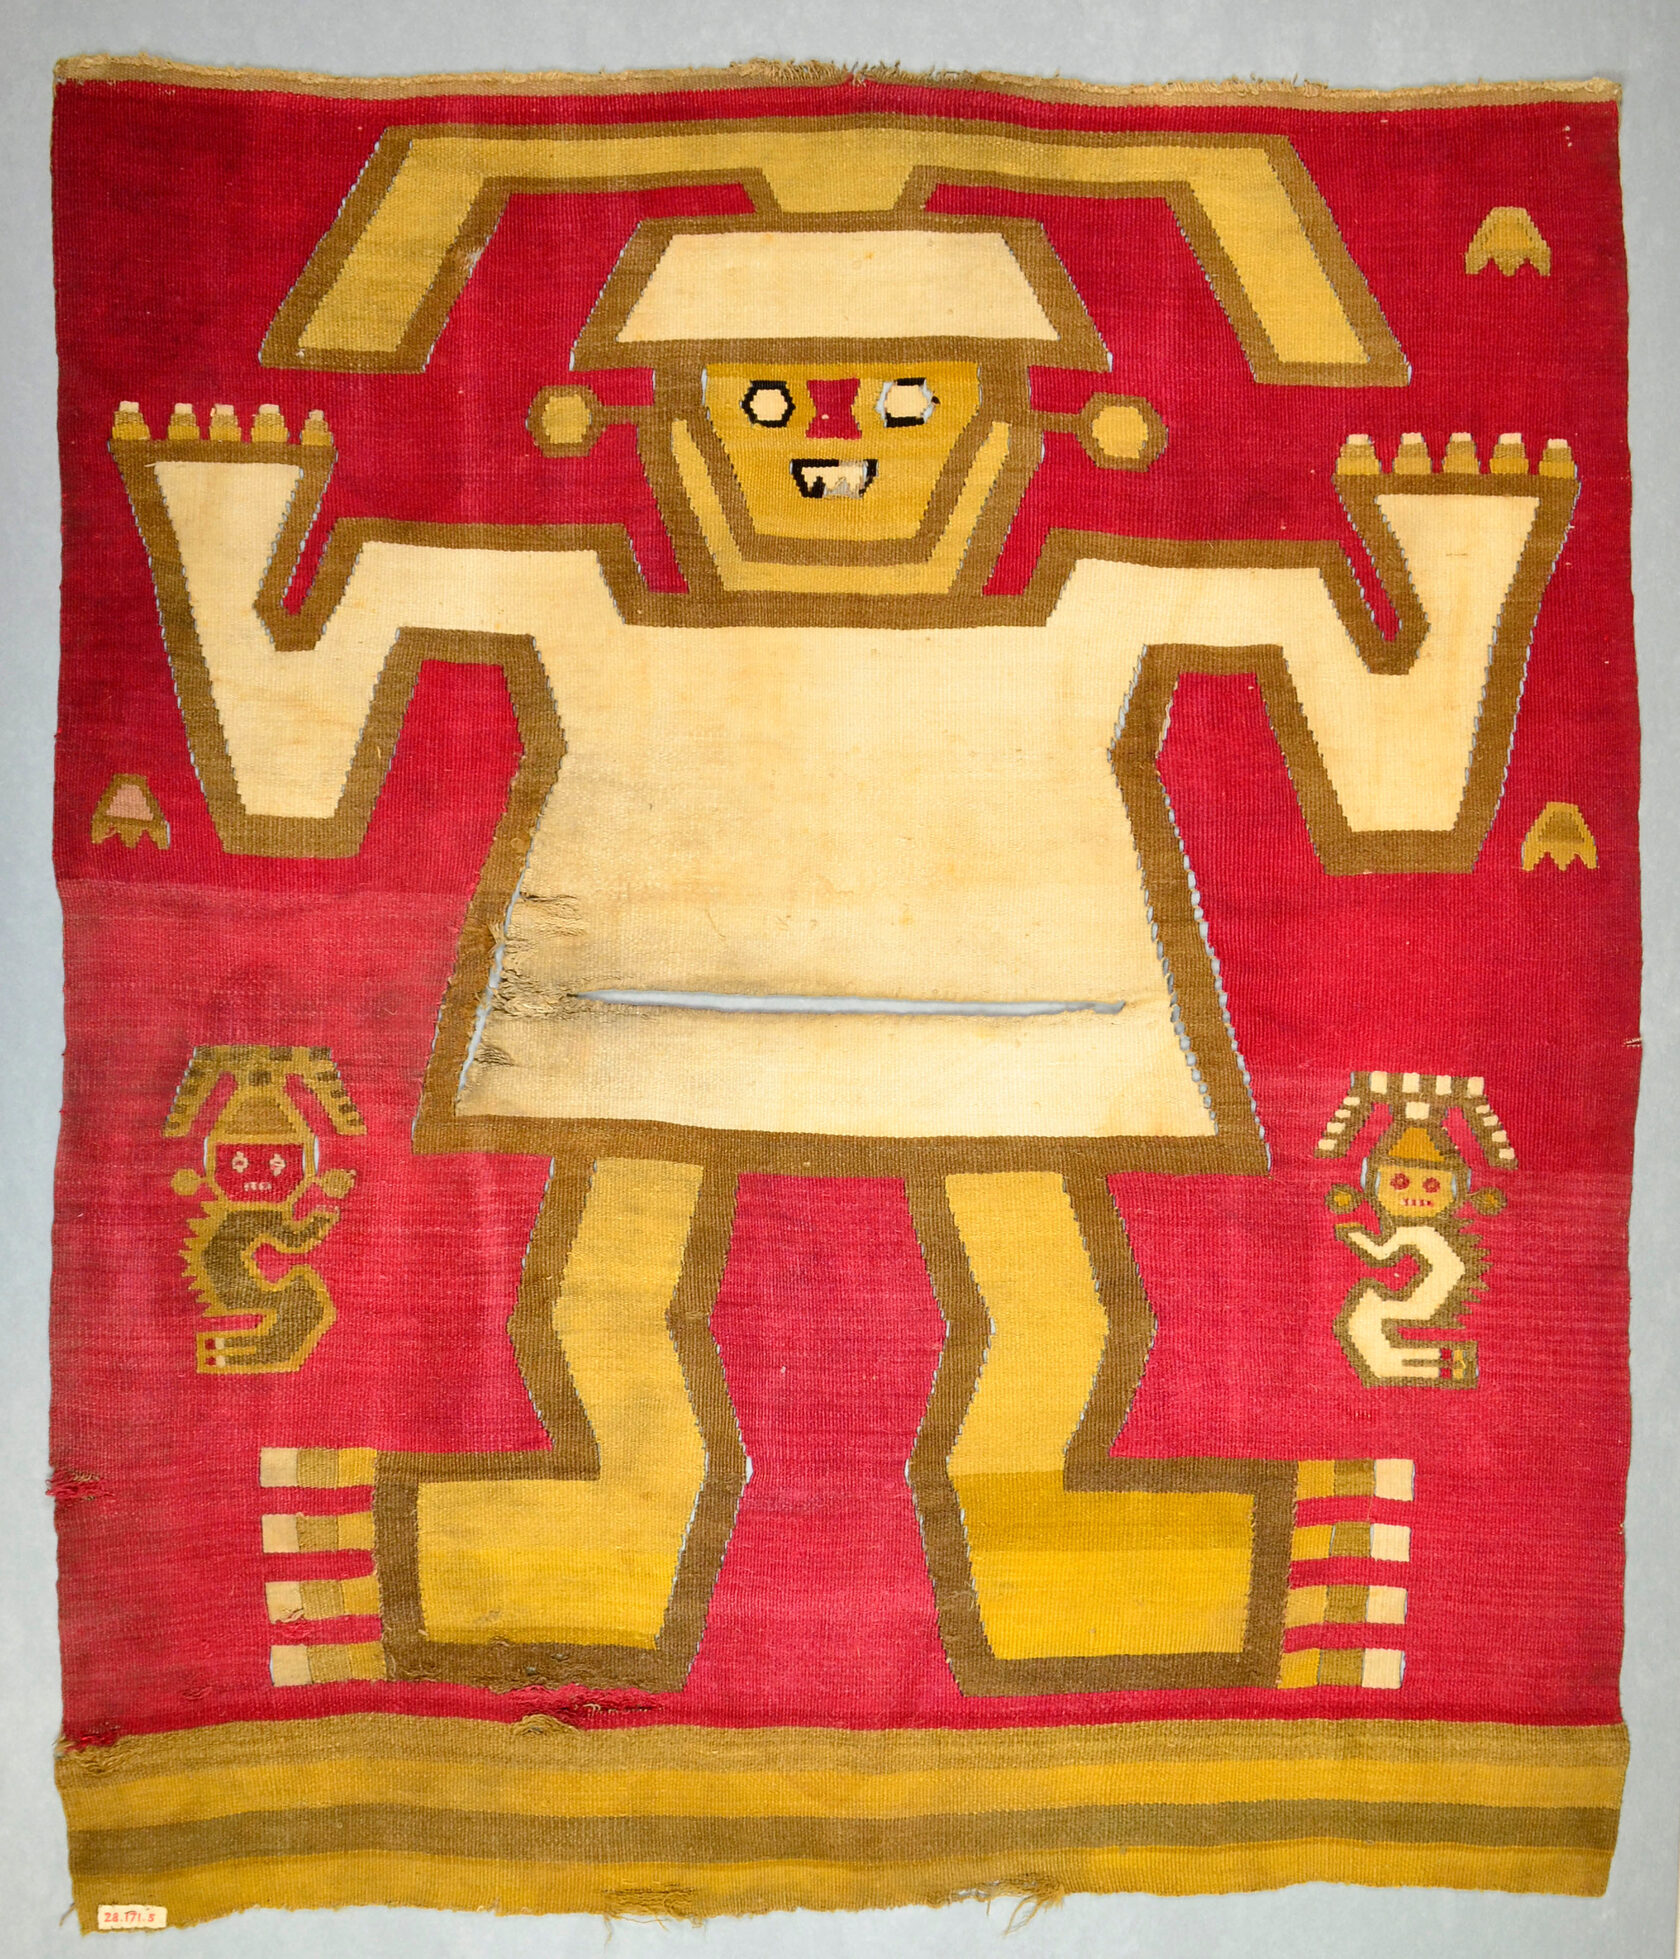 Ткань, Перу, культура Чиму, 12-15 вв. н.э. Коллекция The Metropolitan Museum of Art.